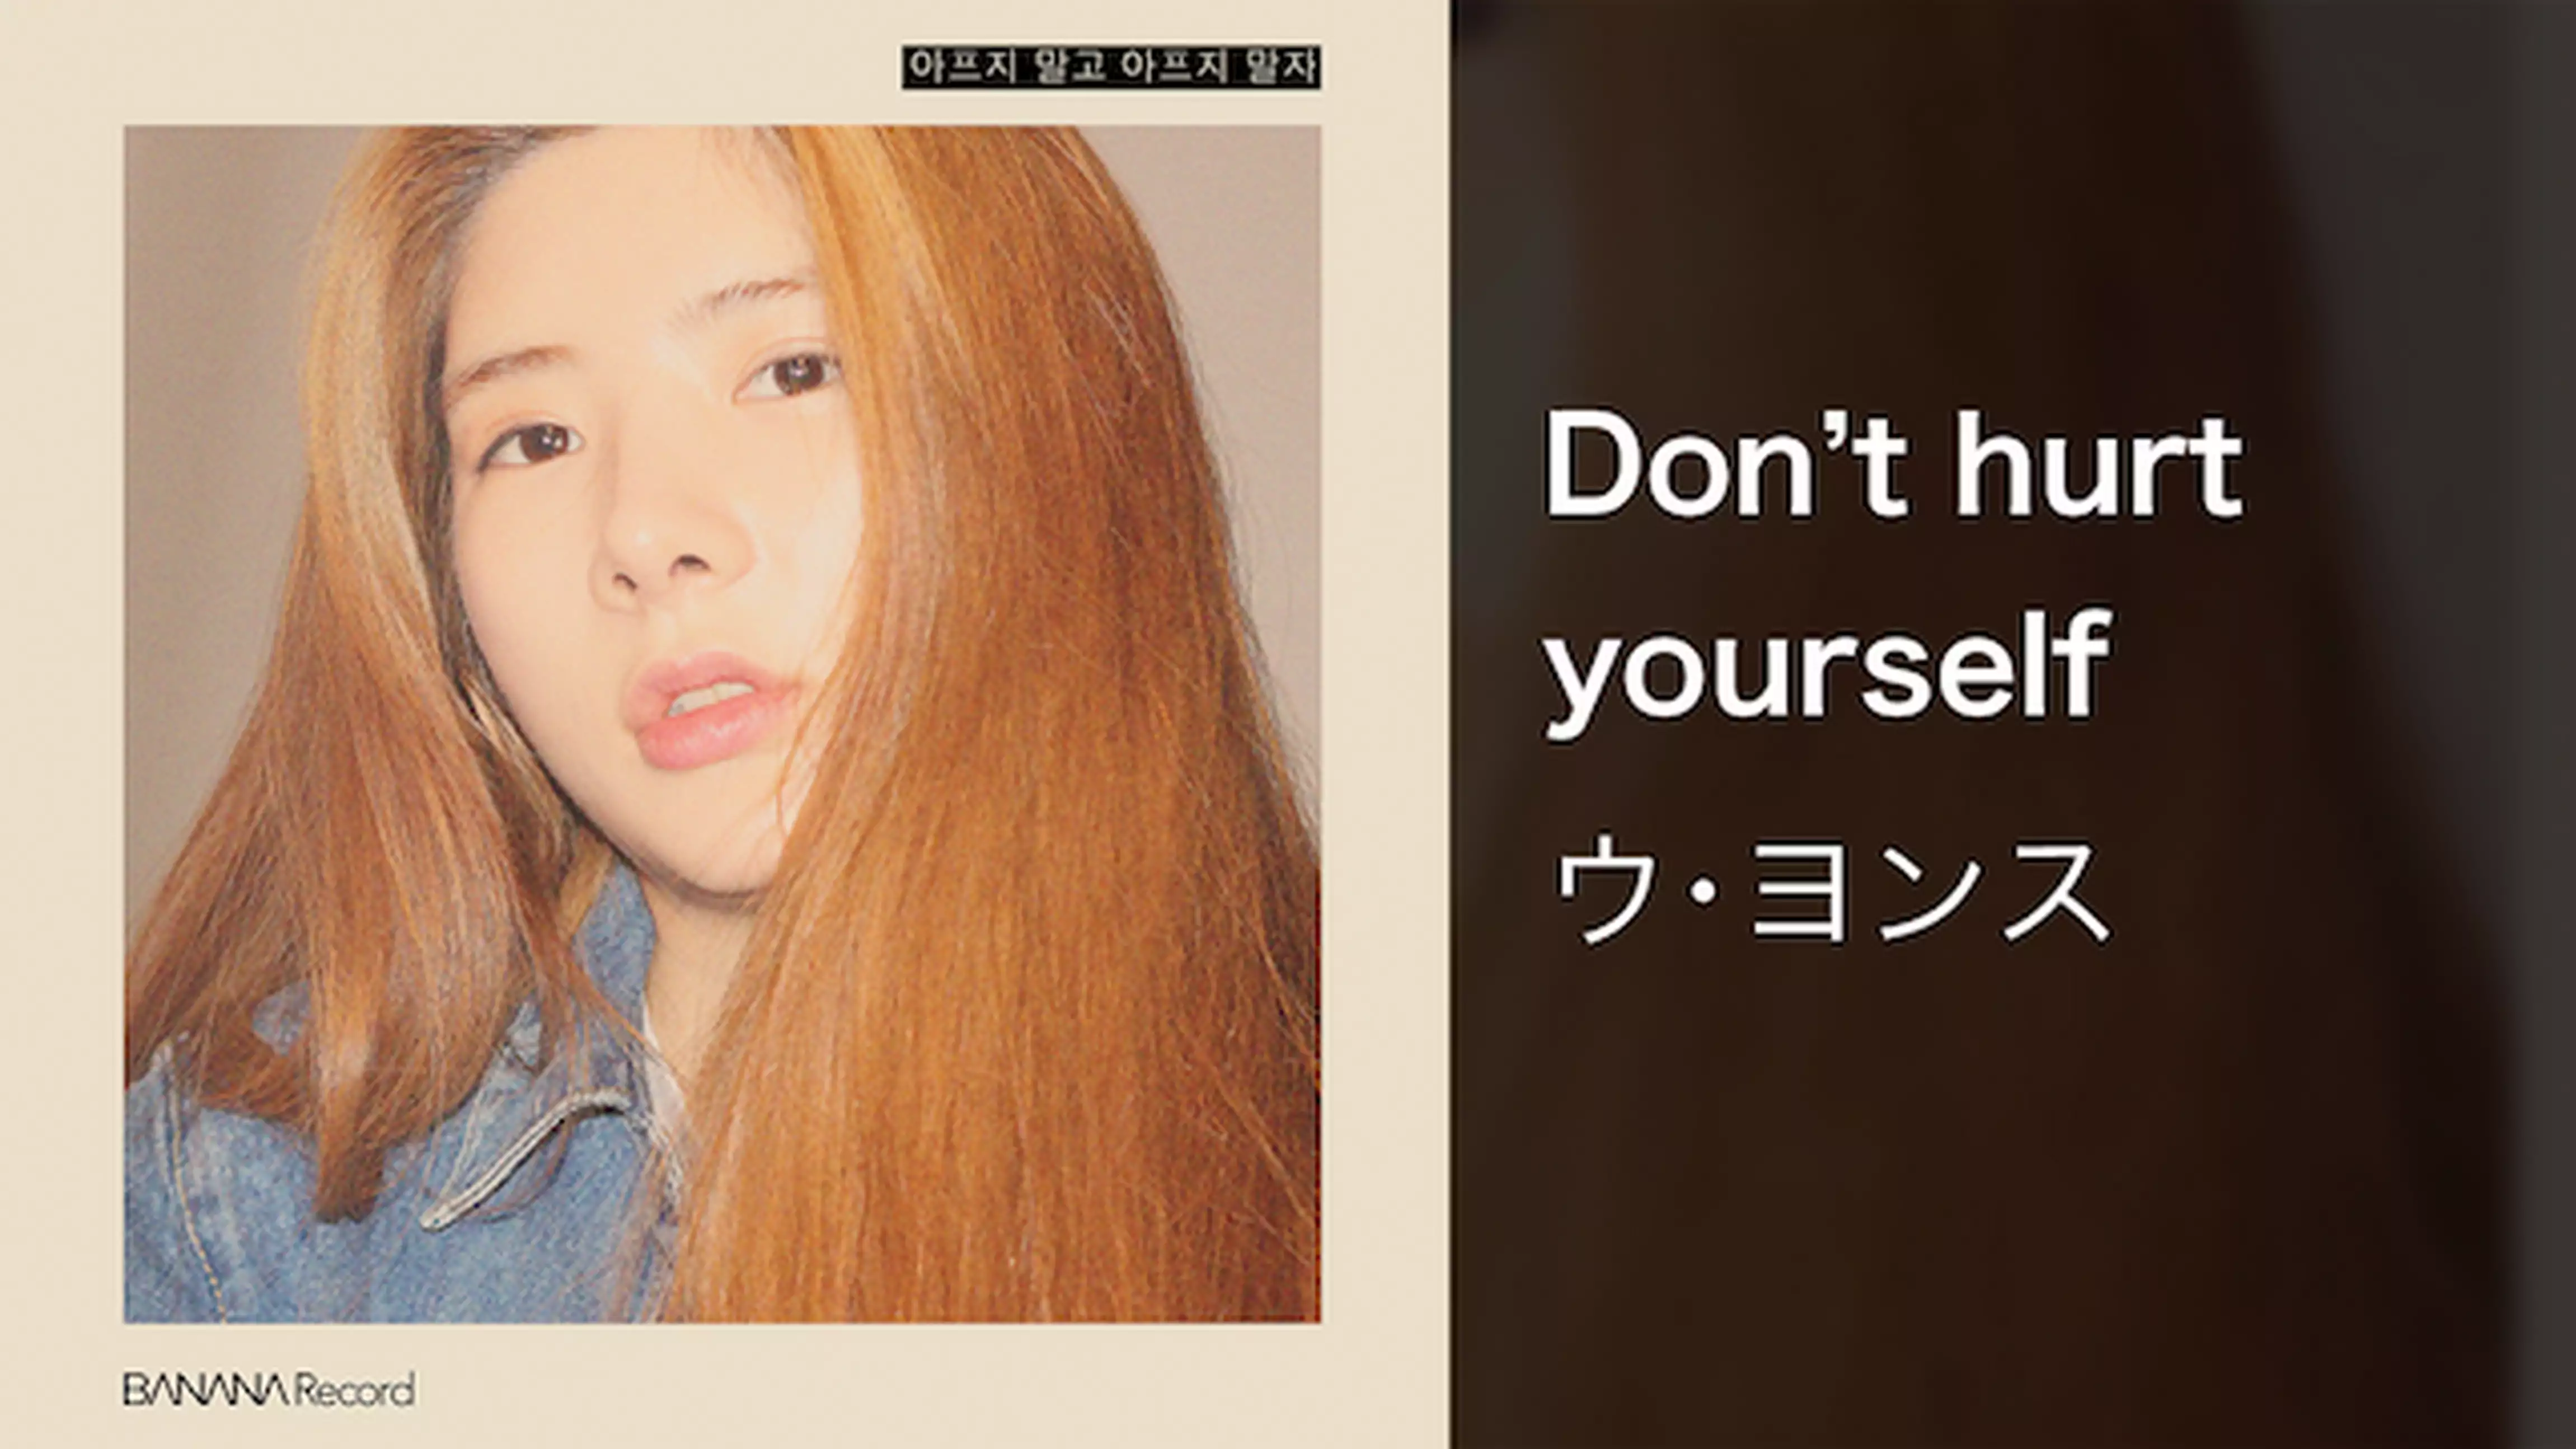 【MV】Don't hurt yourself/ウ･ヨンス